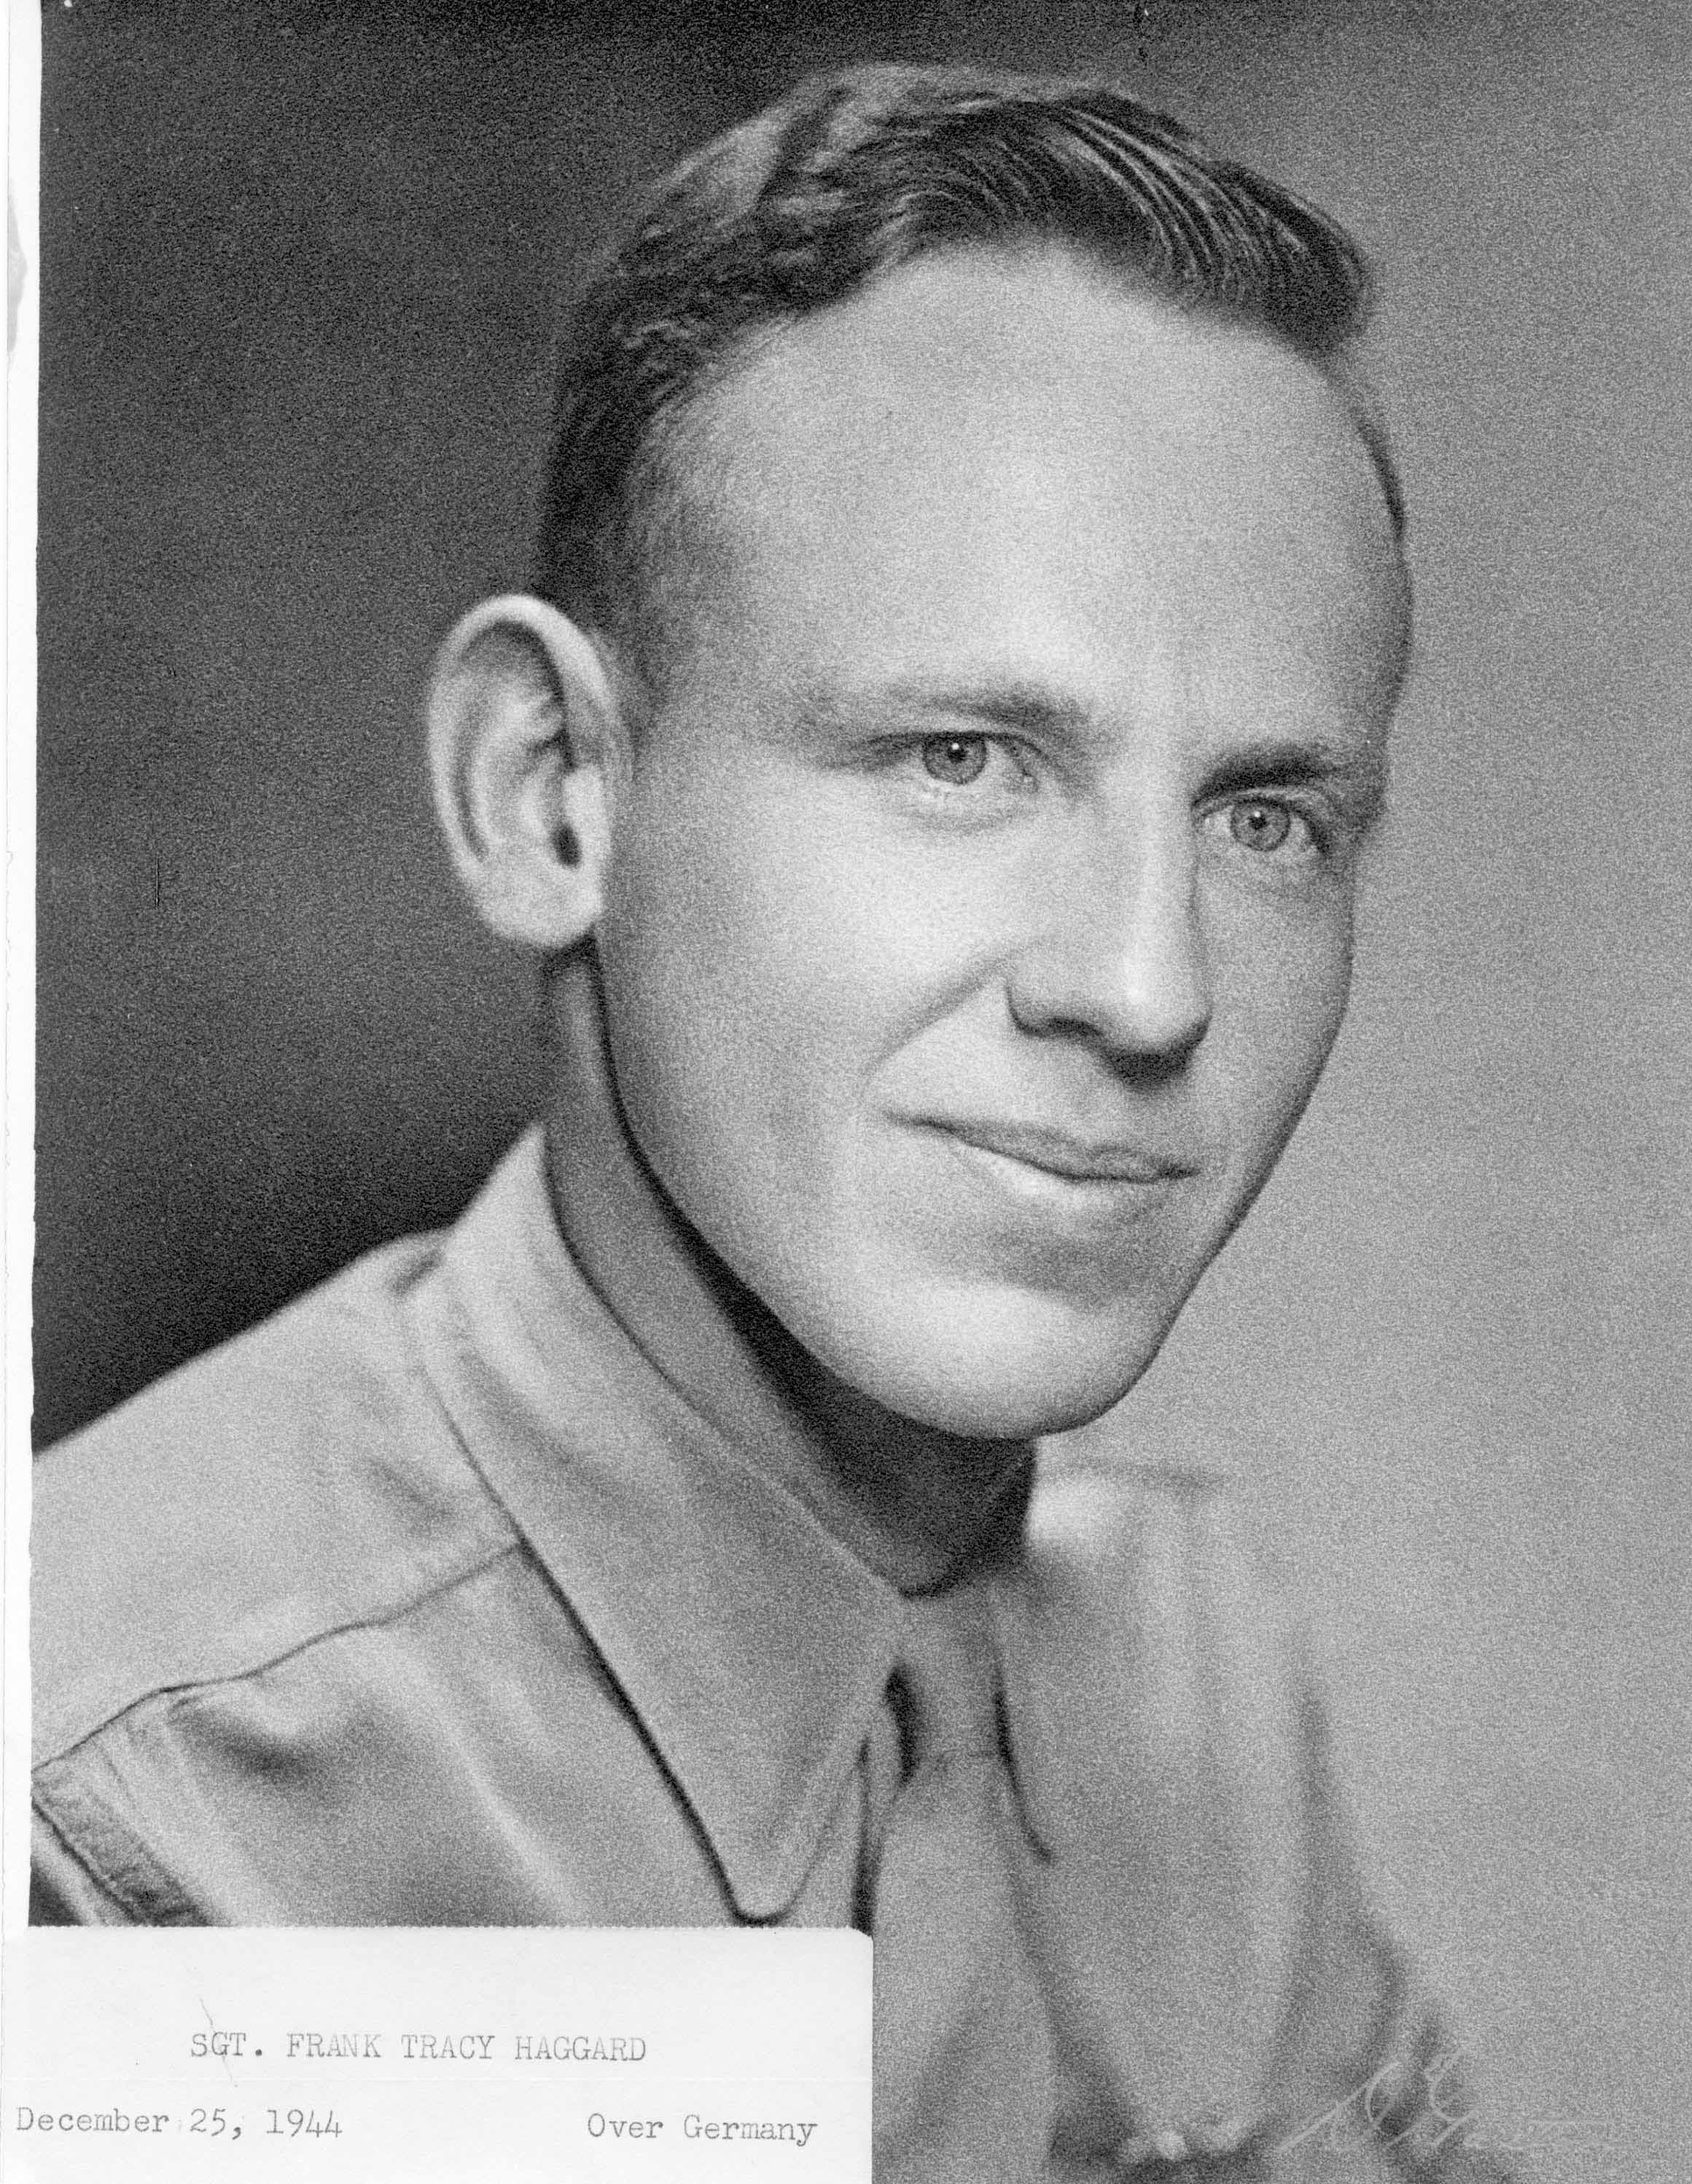 Sgt. Frank Tracey Haggard